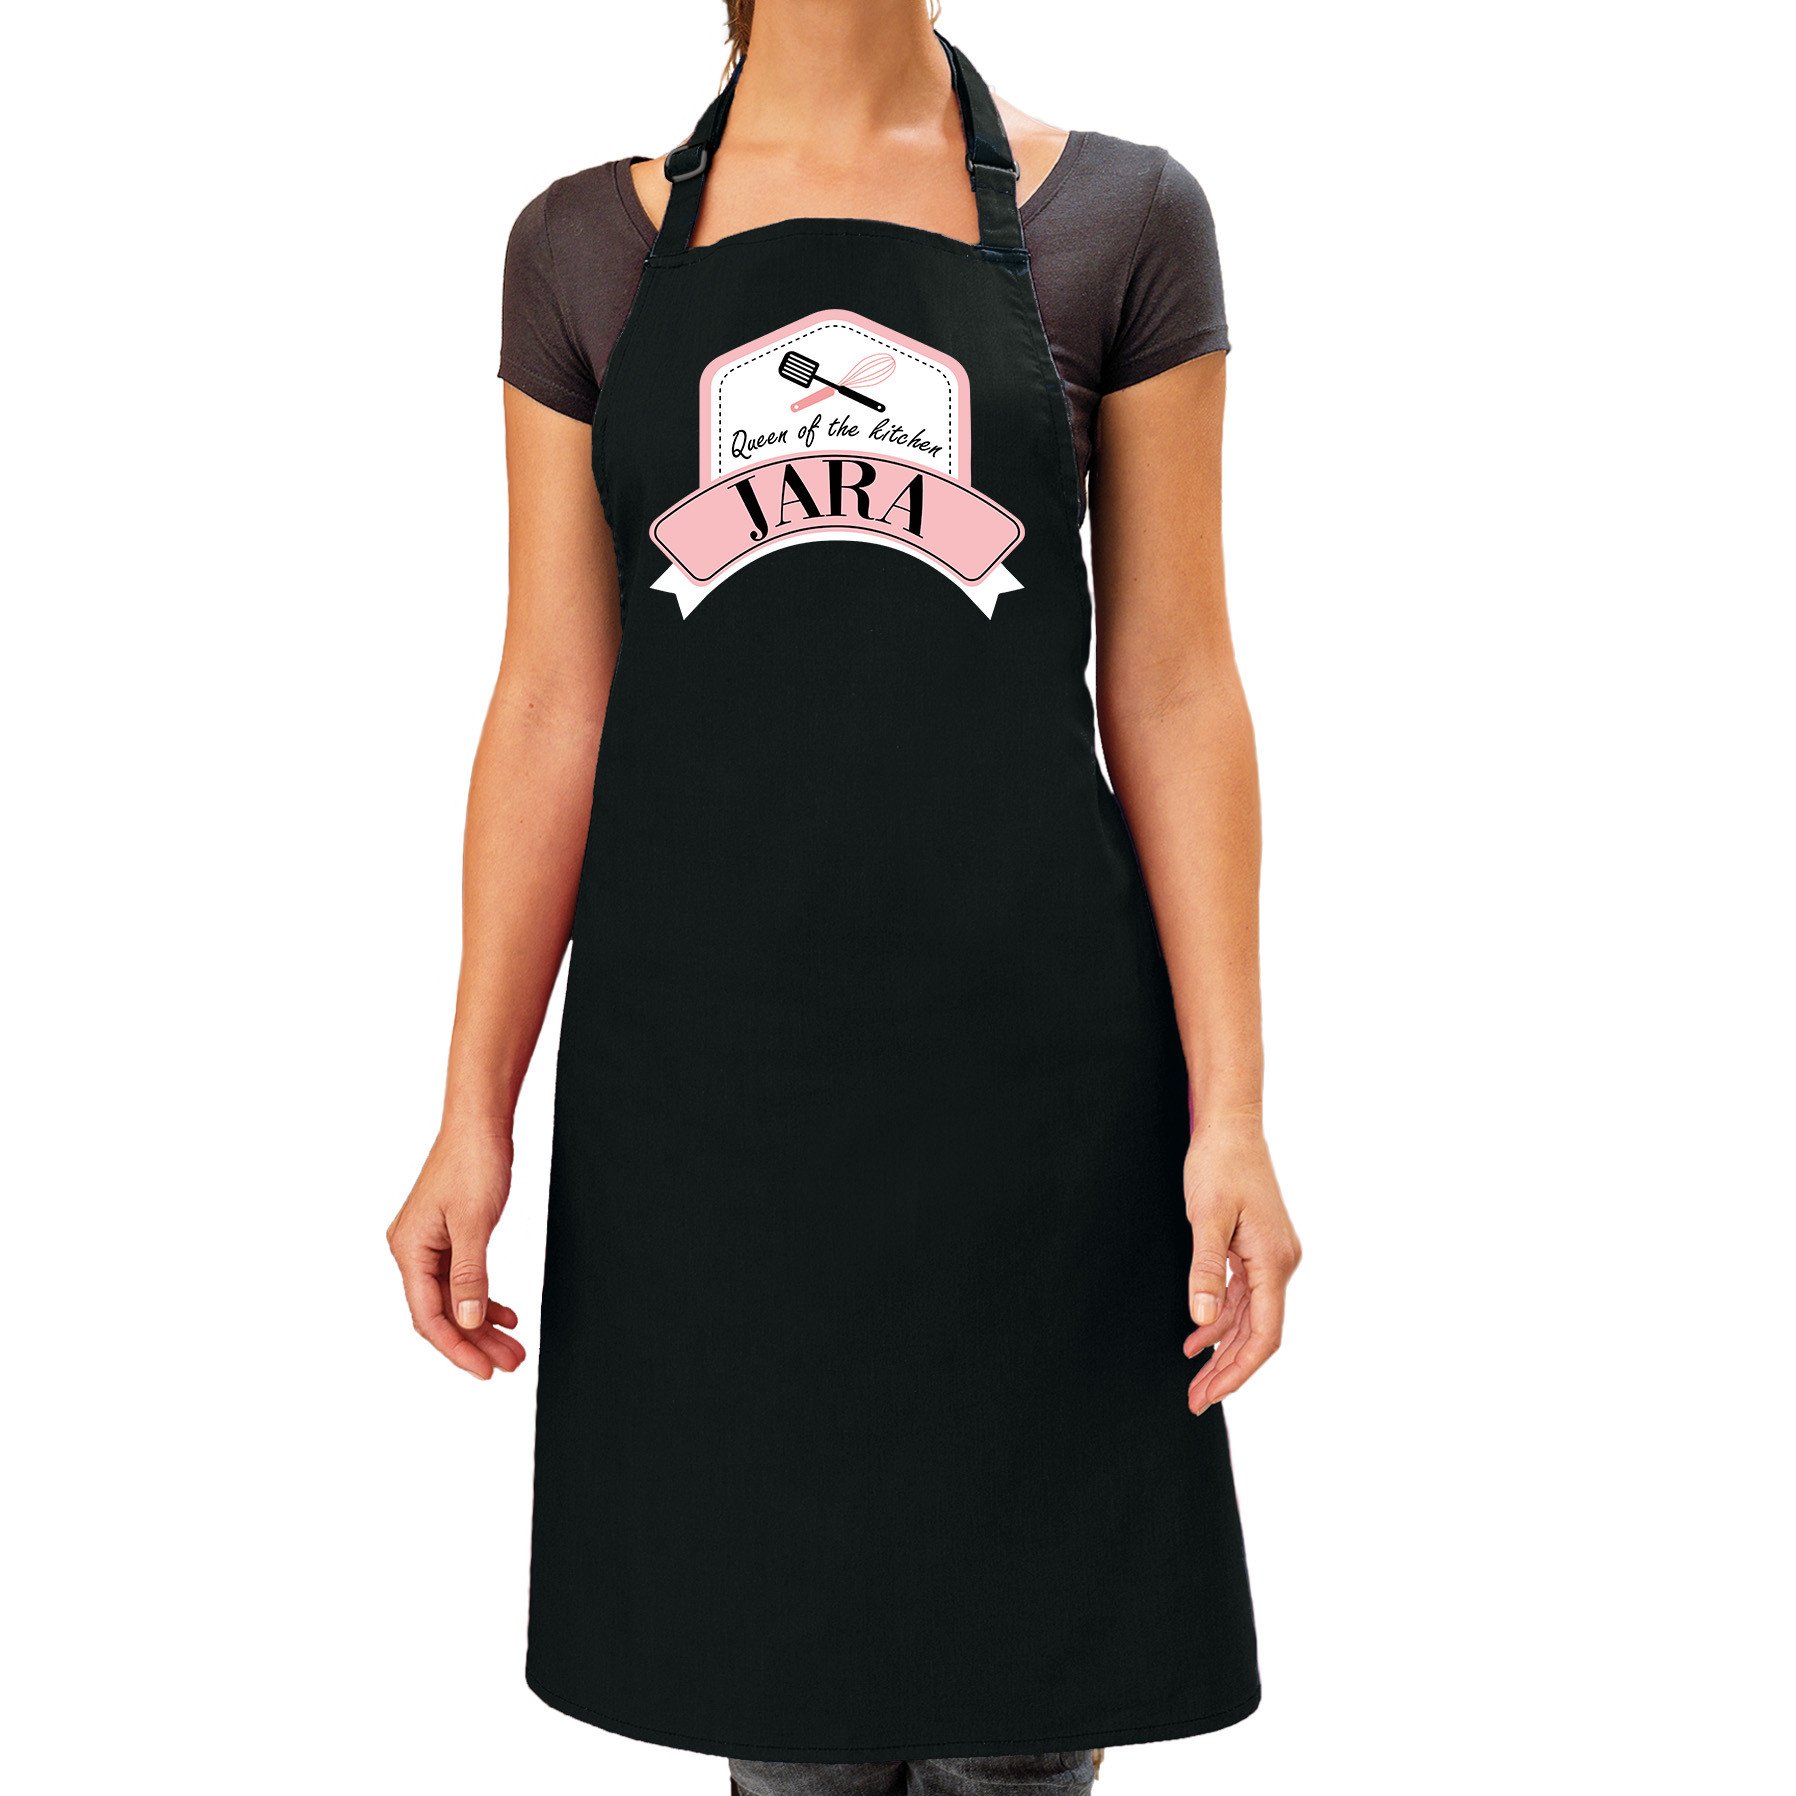 Queen of the kitchen Jara keukenschort/ barbecue schort zwart voor dames